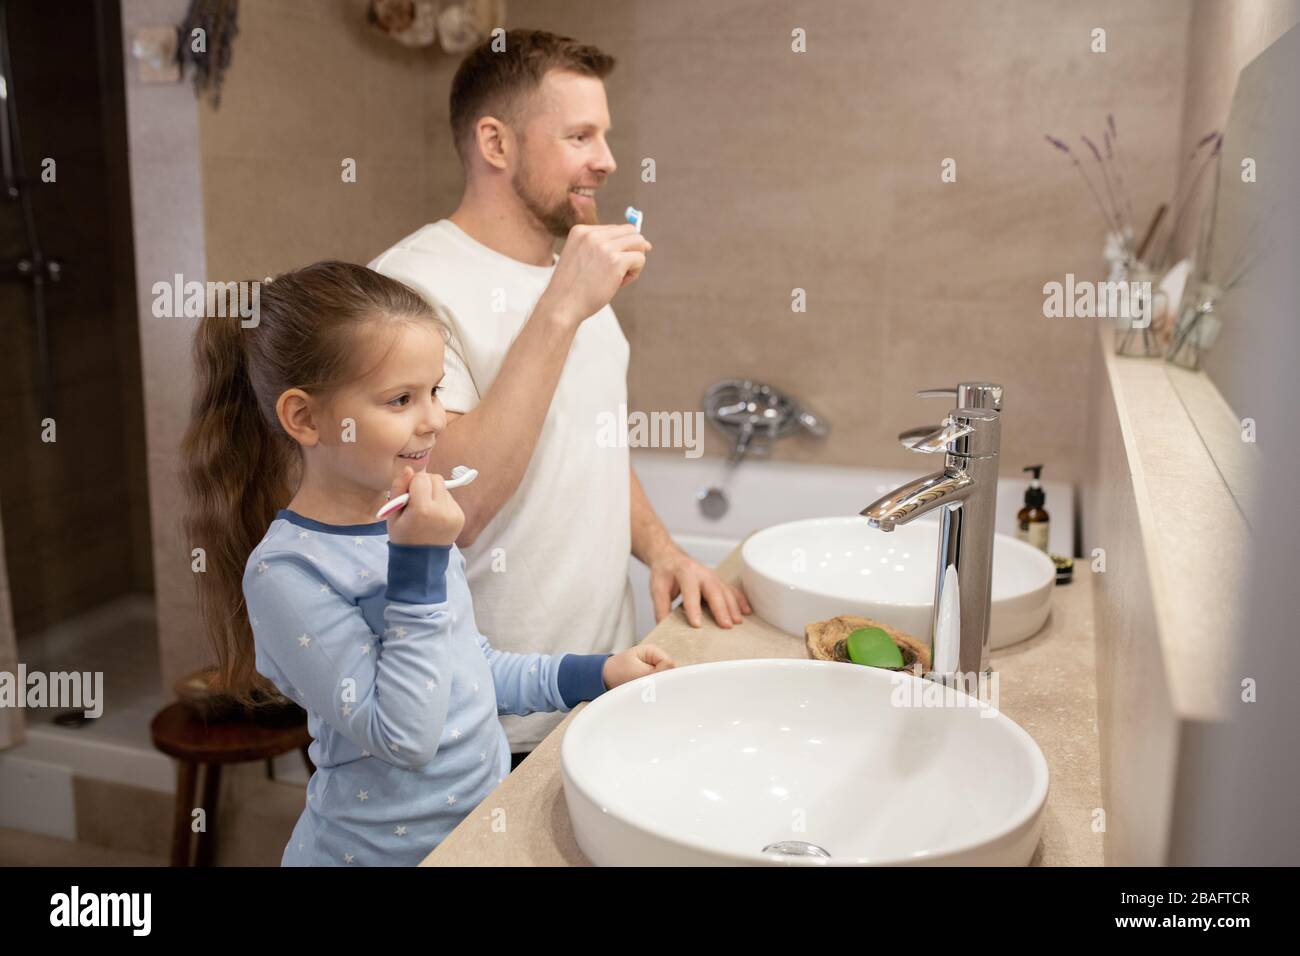 Jolie petite fille et son jeune père heureux avec brosses à dents allant brosser les dents tout en se tenant dans la salle de bains devant le miroir Banque D'Images